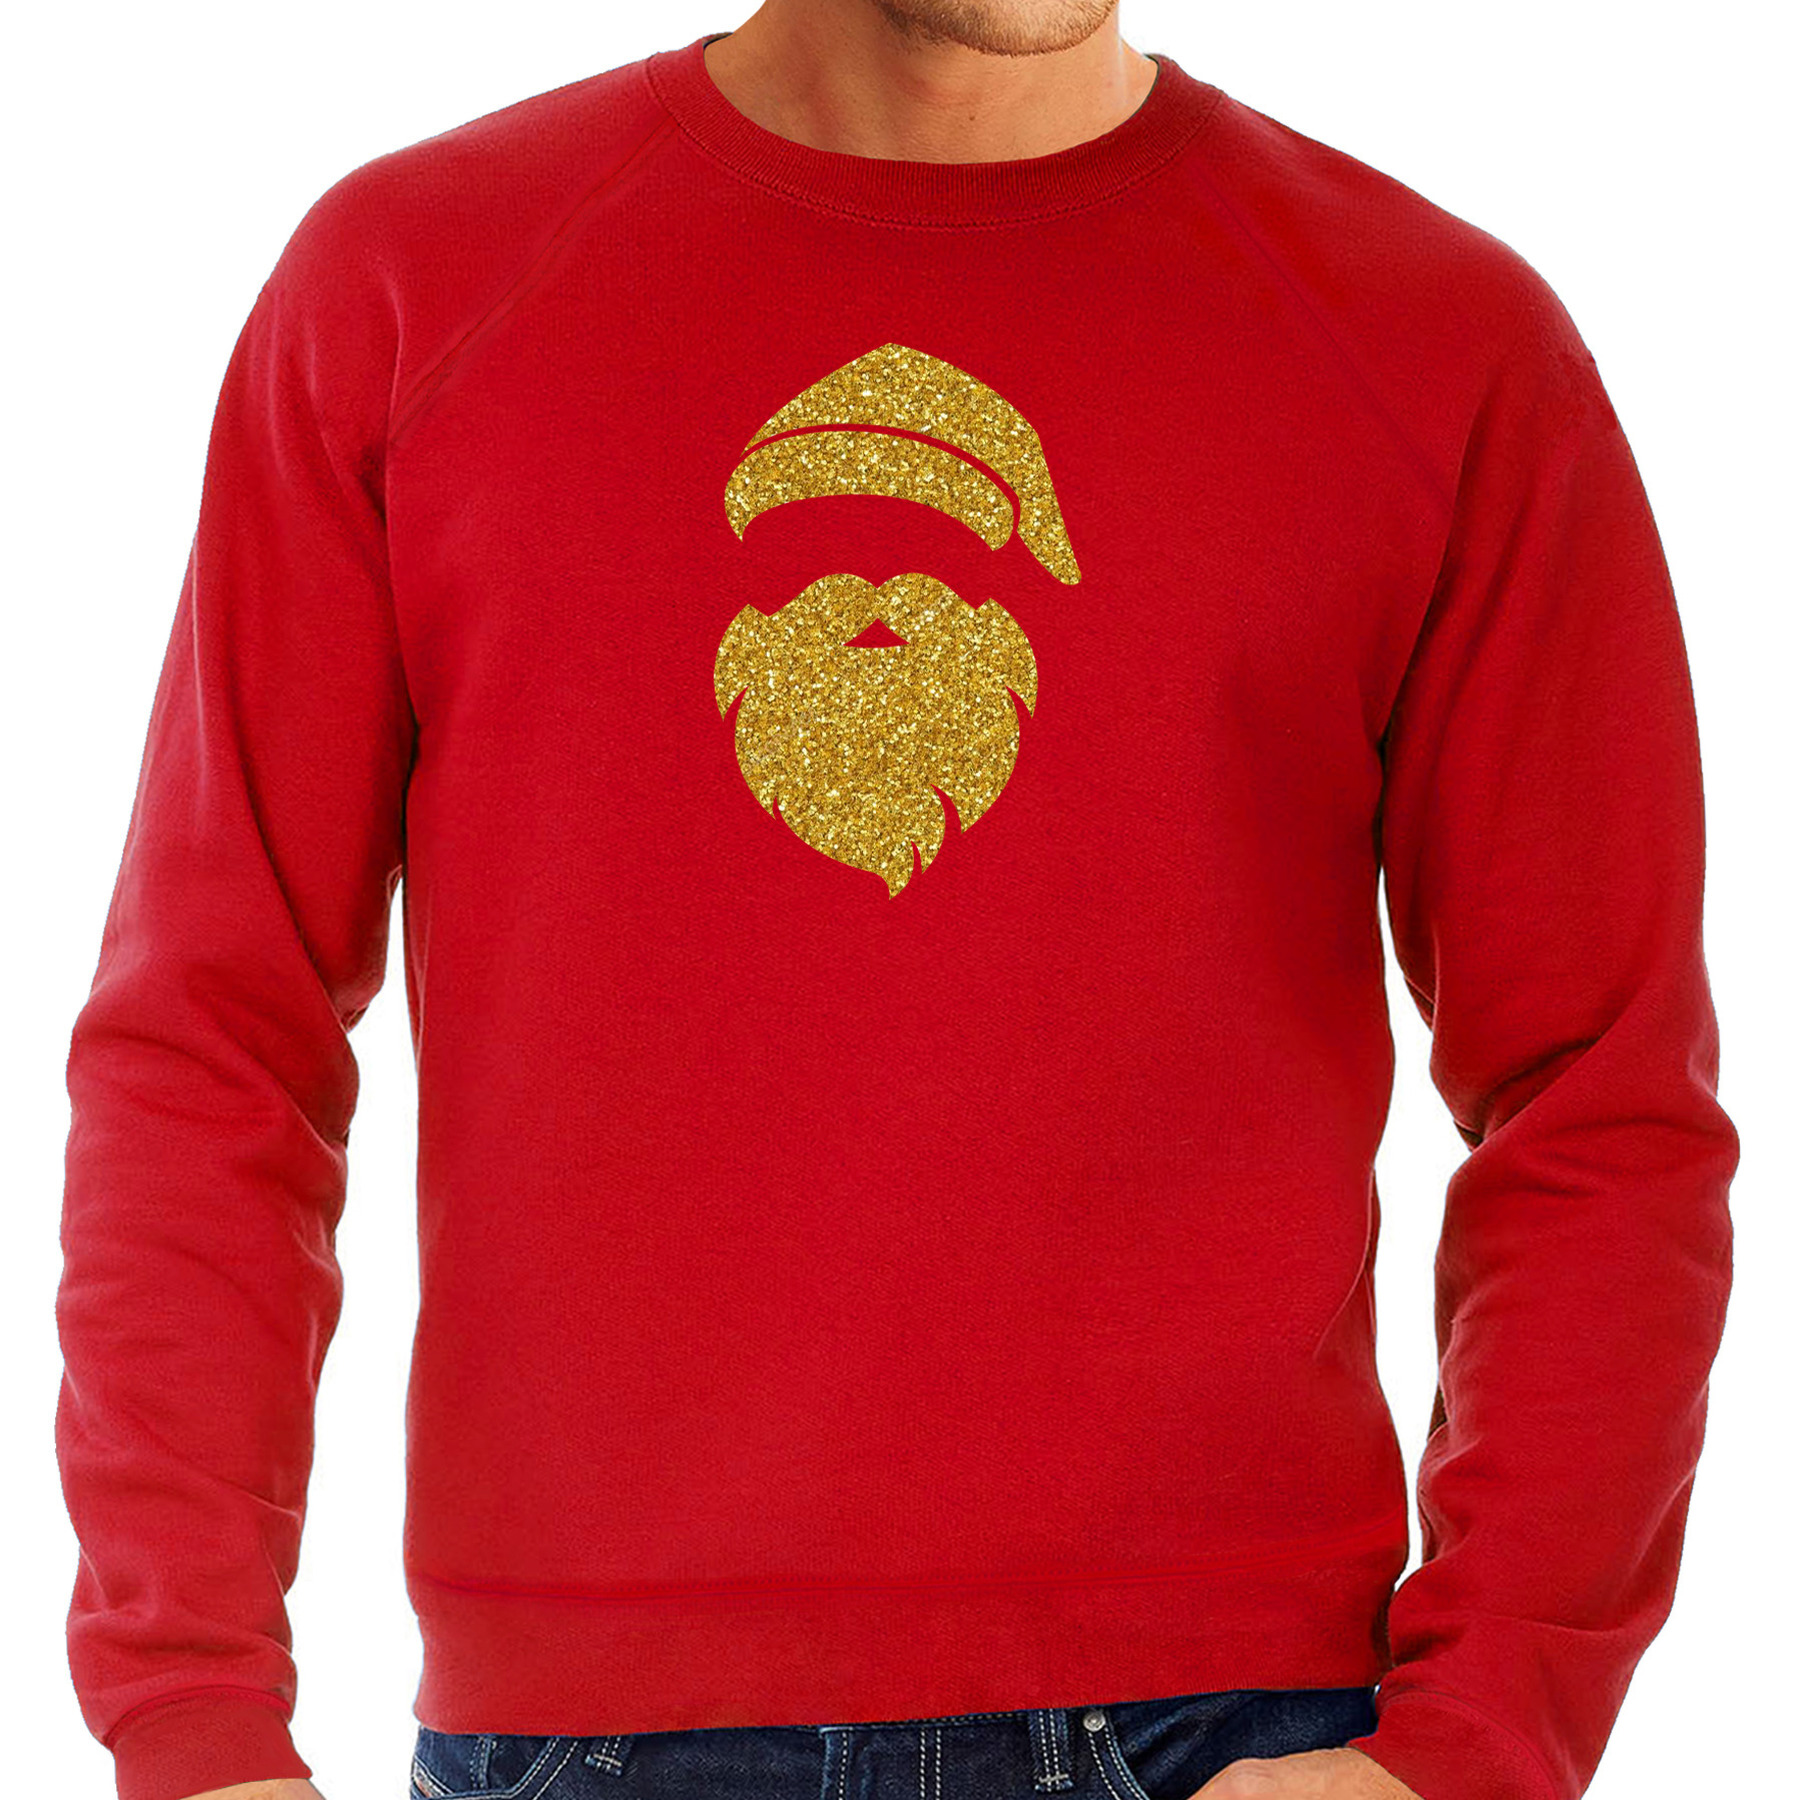 Kerstman hoofd Kerst sweater-trui rood voor heren met gouden glitter bedrukking